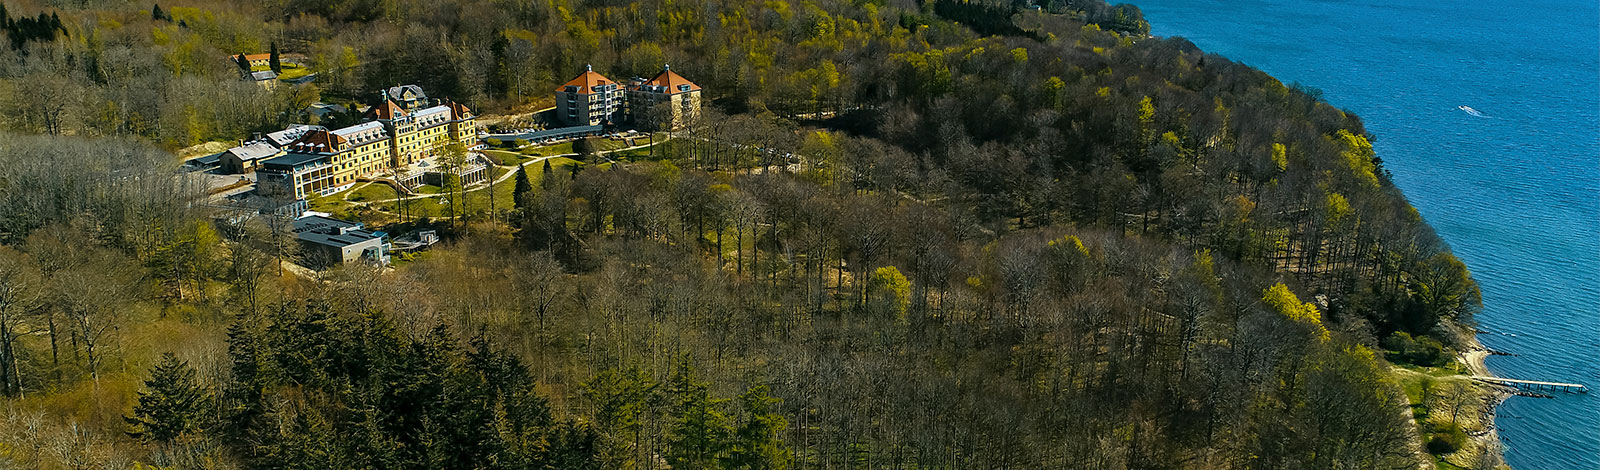 Hotel Vejlefjord smukt beliggende midt i skoven